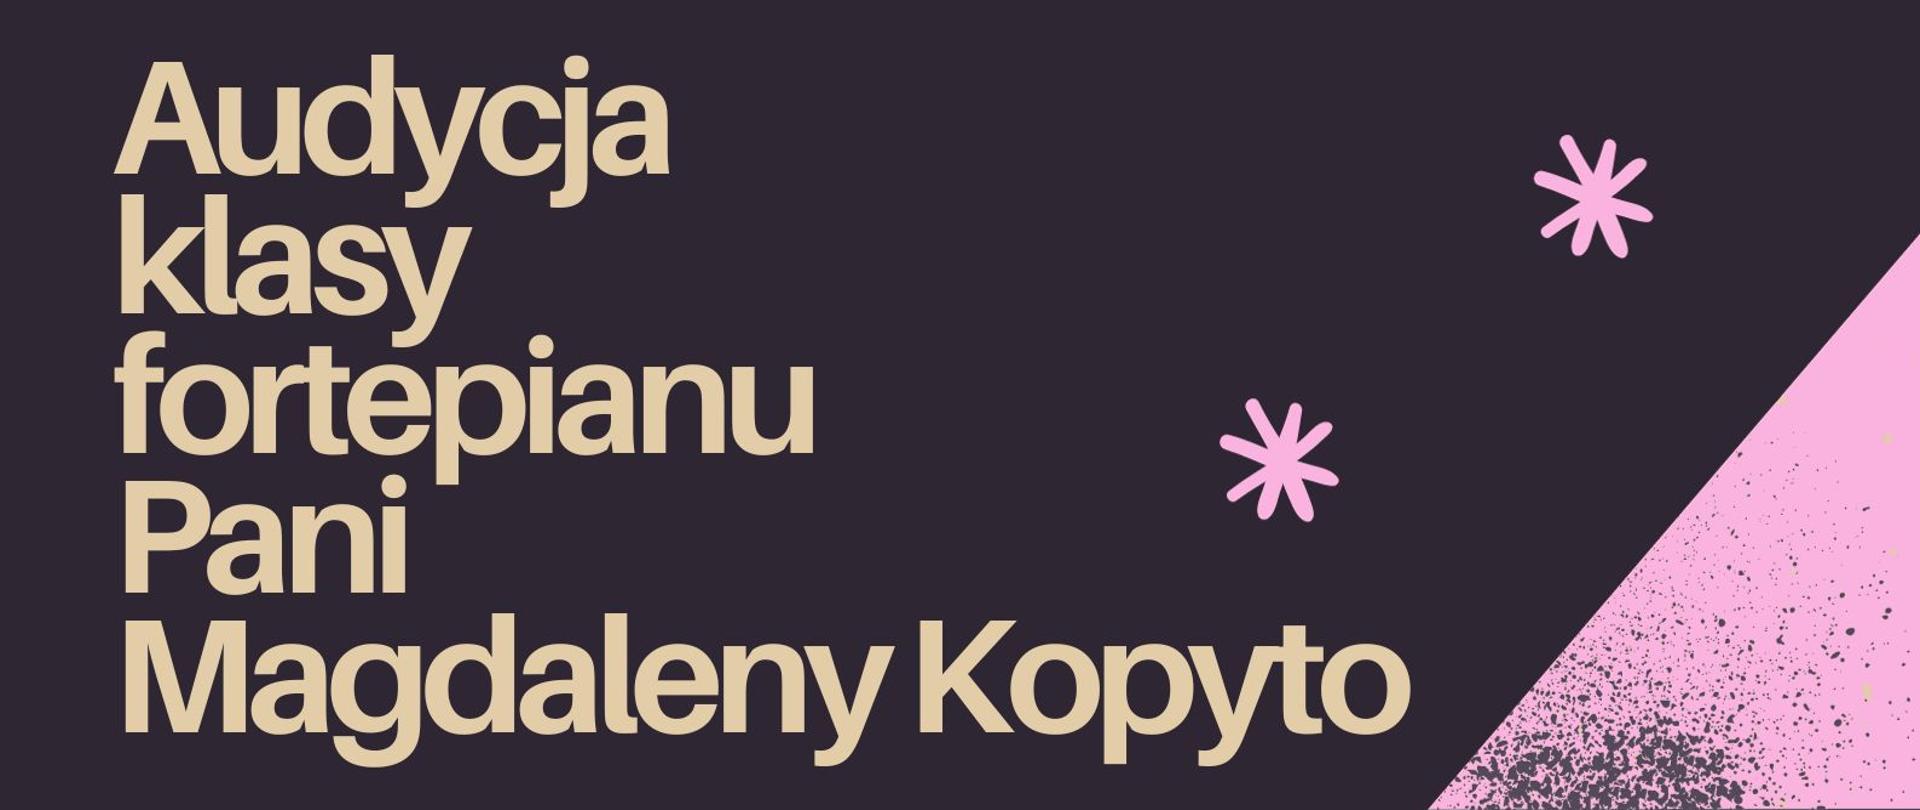 Plakat zawiera informację o audycji klasy fortepianu Pani Magdaleny Kopyto, w dolnym lewym rogu fortepian, w prawym informacja o miejscu odbywania się audycji, plakat w kolorach fioletu różu i beżu.